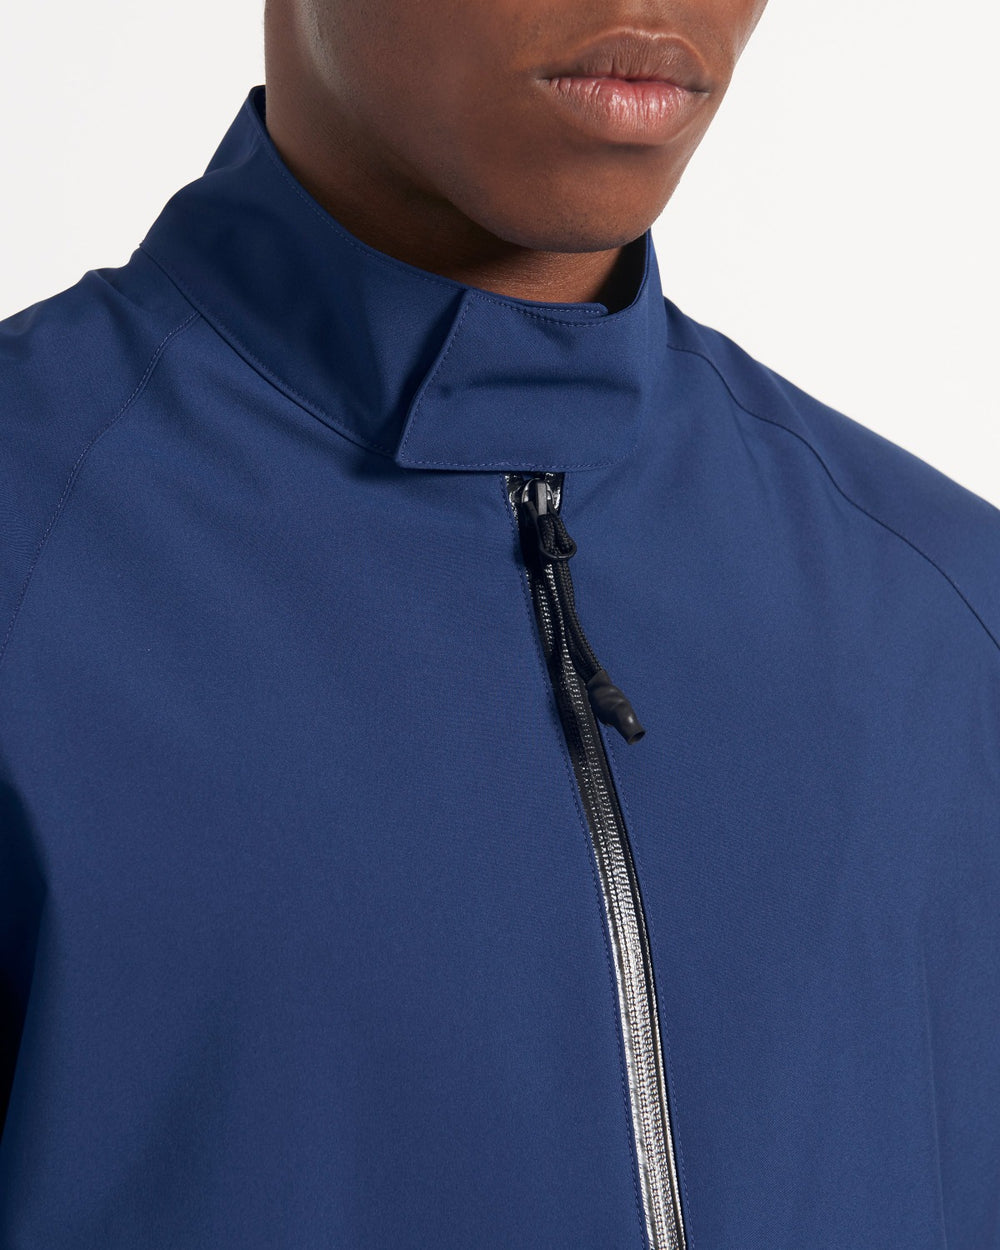 Men's navy waterproof Harrington jacket with reflective zip